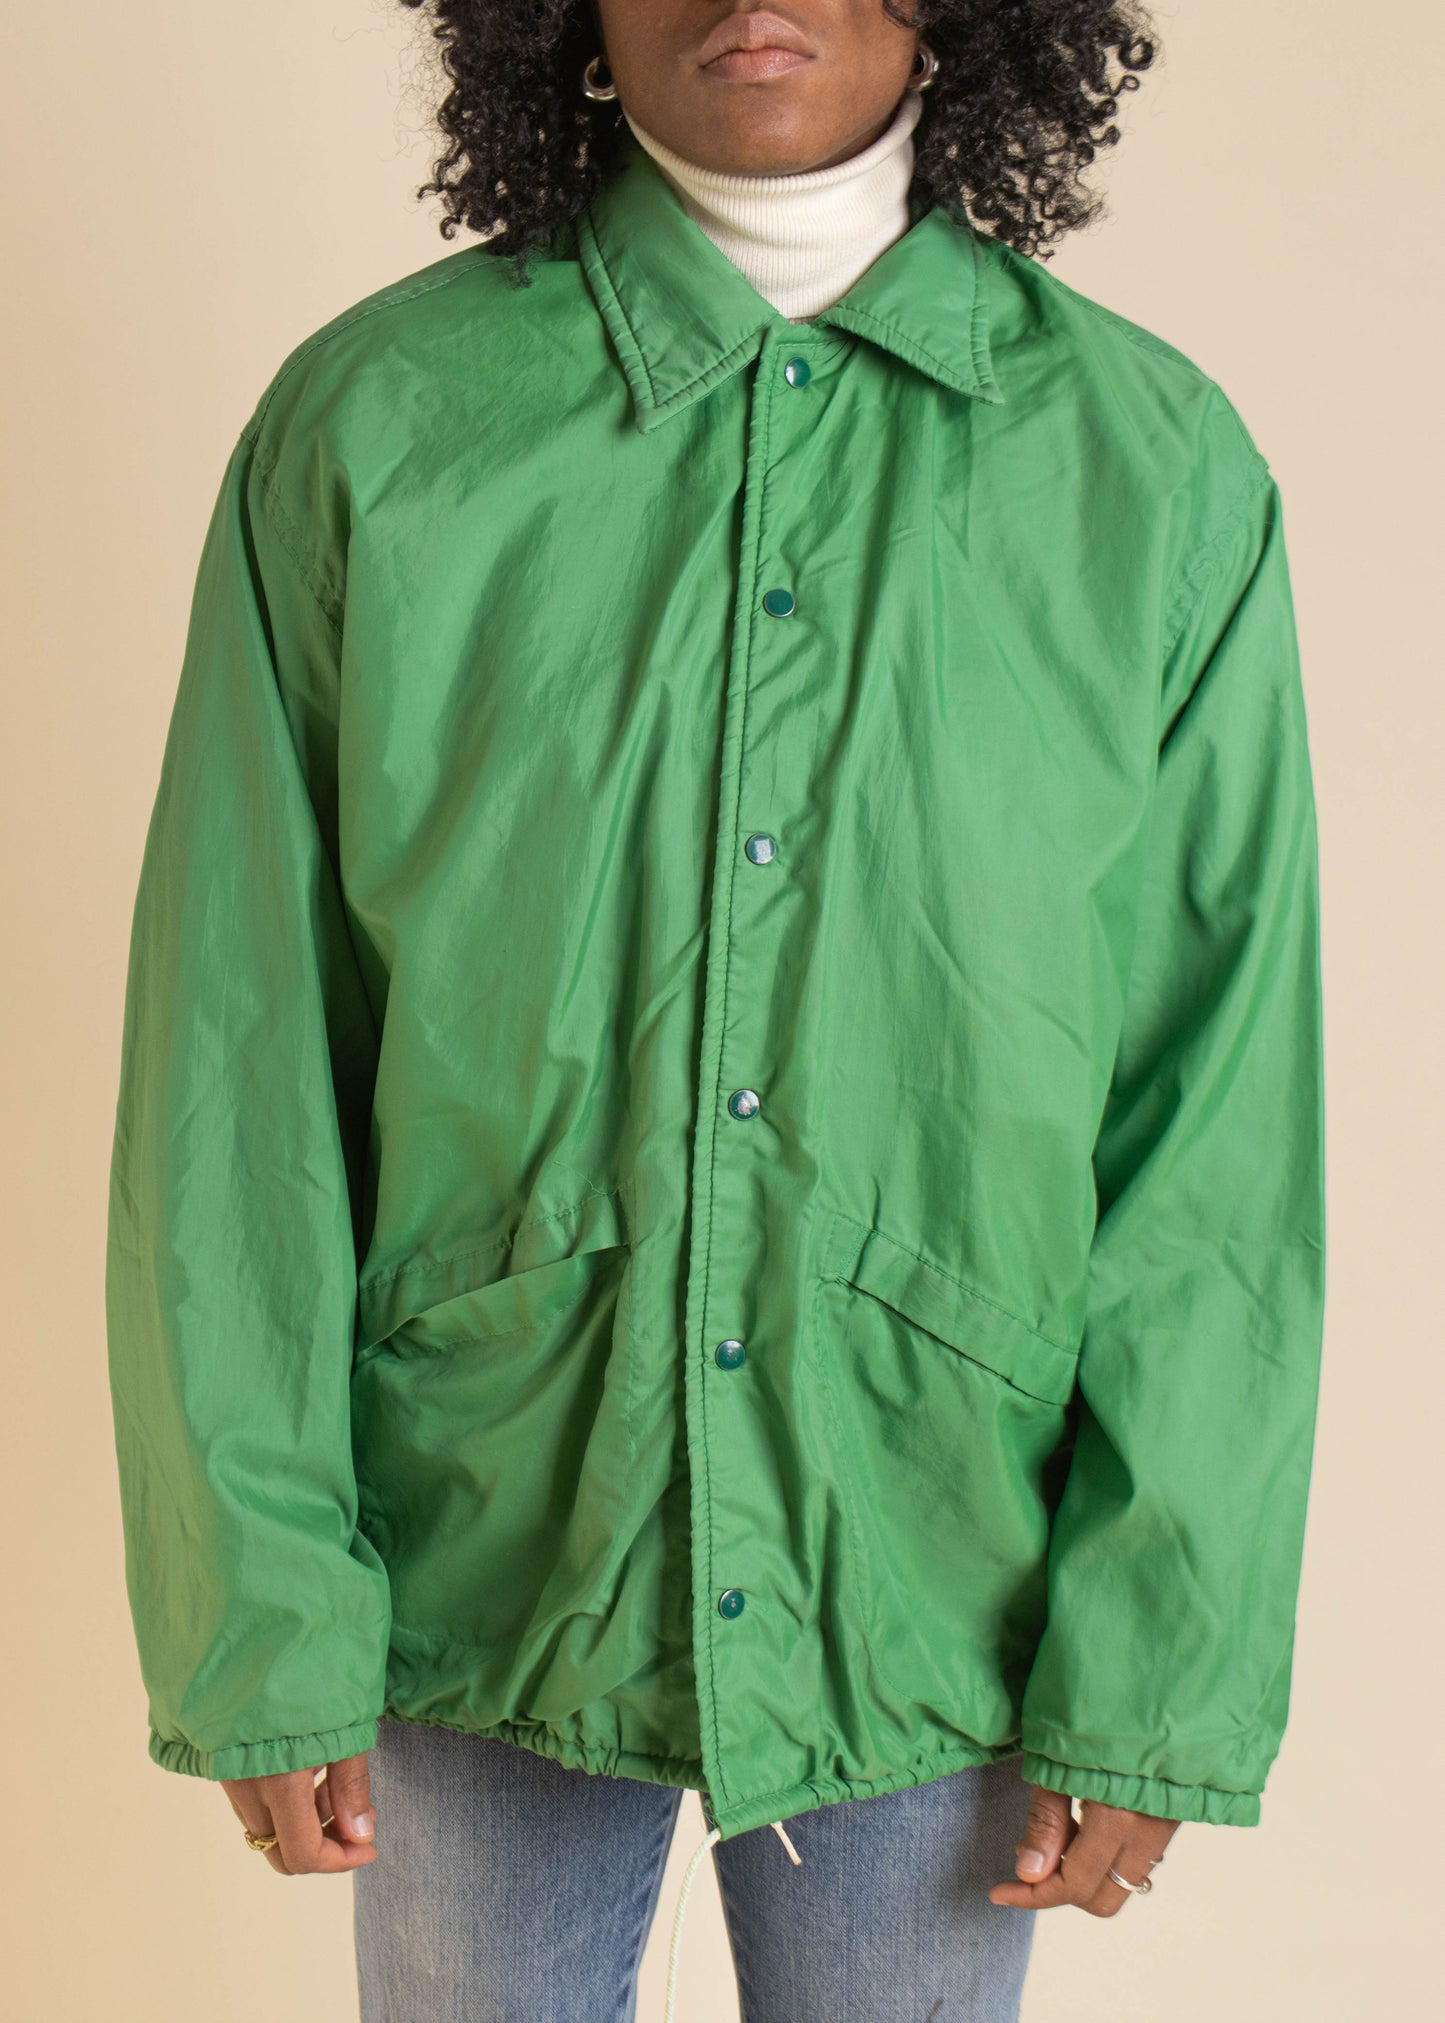 1980s Pla-Jac Sportsman Club Nylon Jacket Size M/L